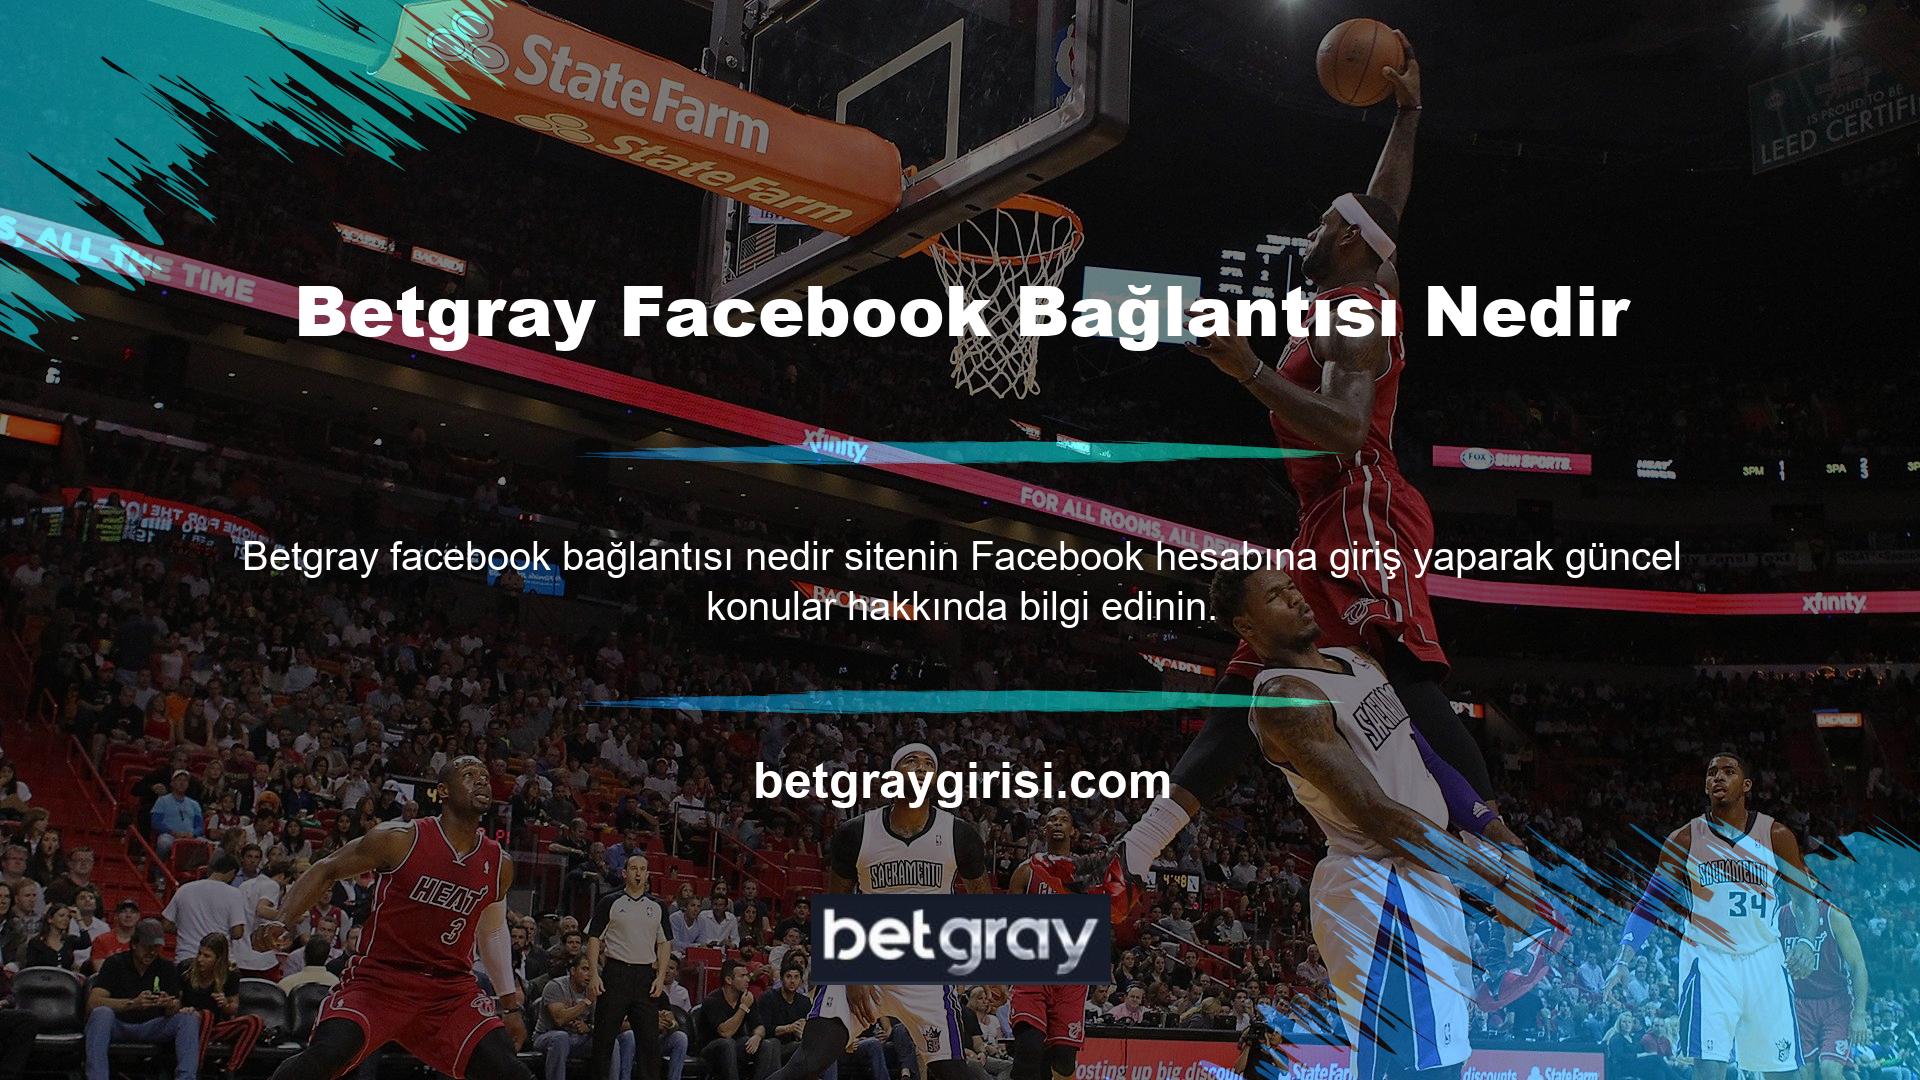 Yaklaşan etkinlikler hakkında bilgi almak için Betgray Facebook sayfasına tıklayın